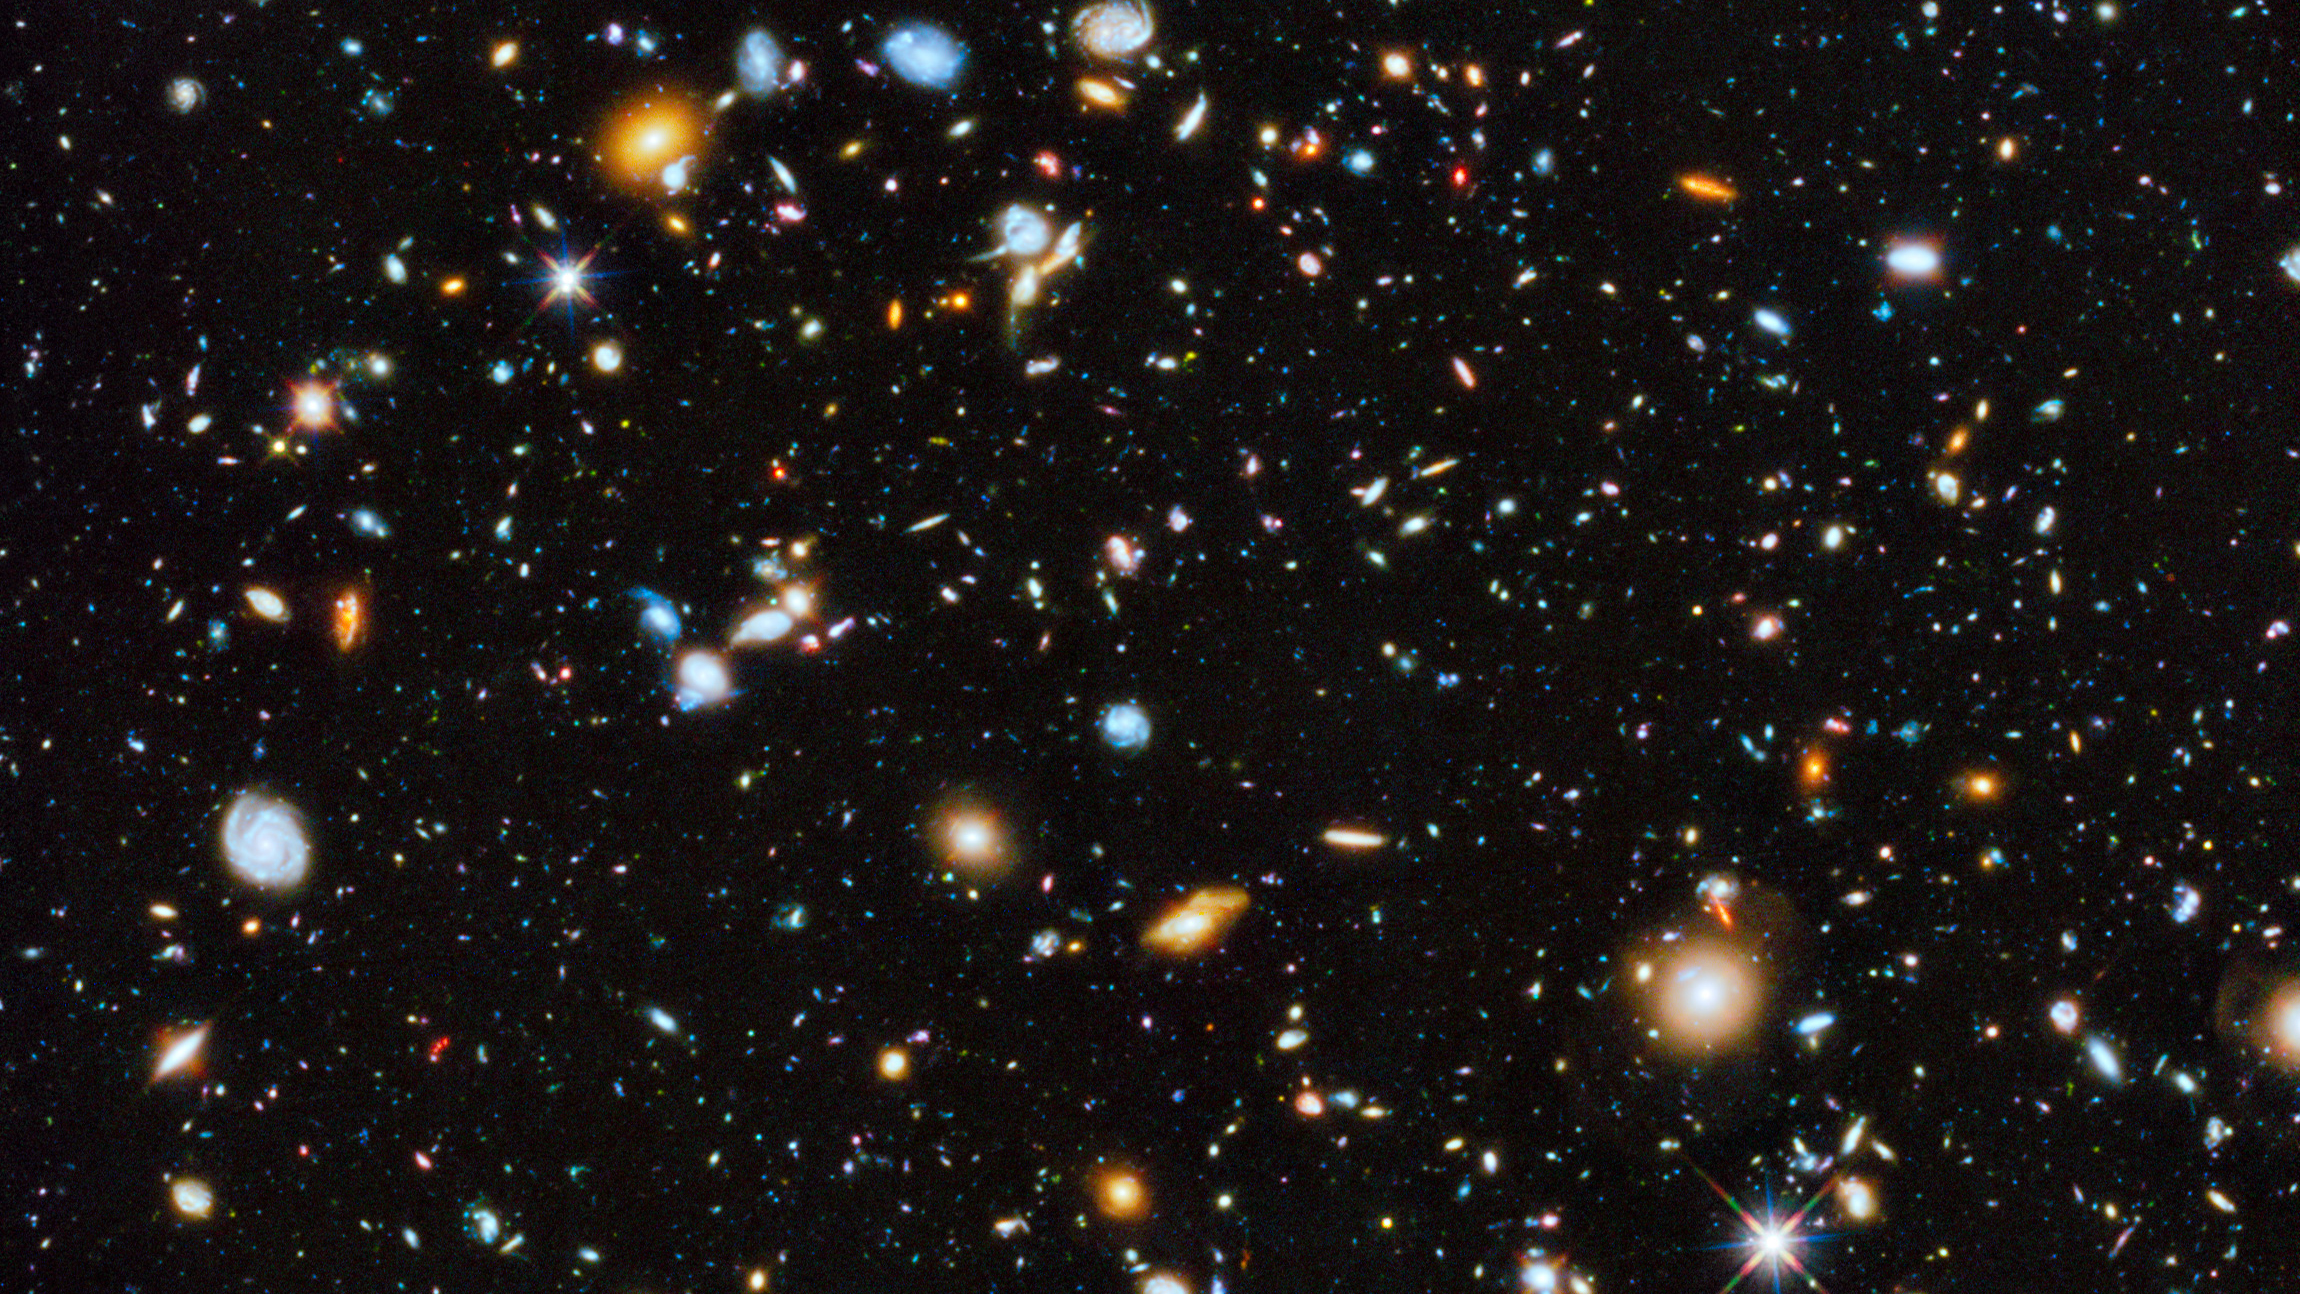 16x9 crop of Hubble Ultra Deep Field image